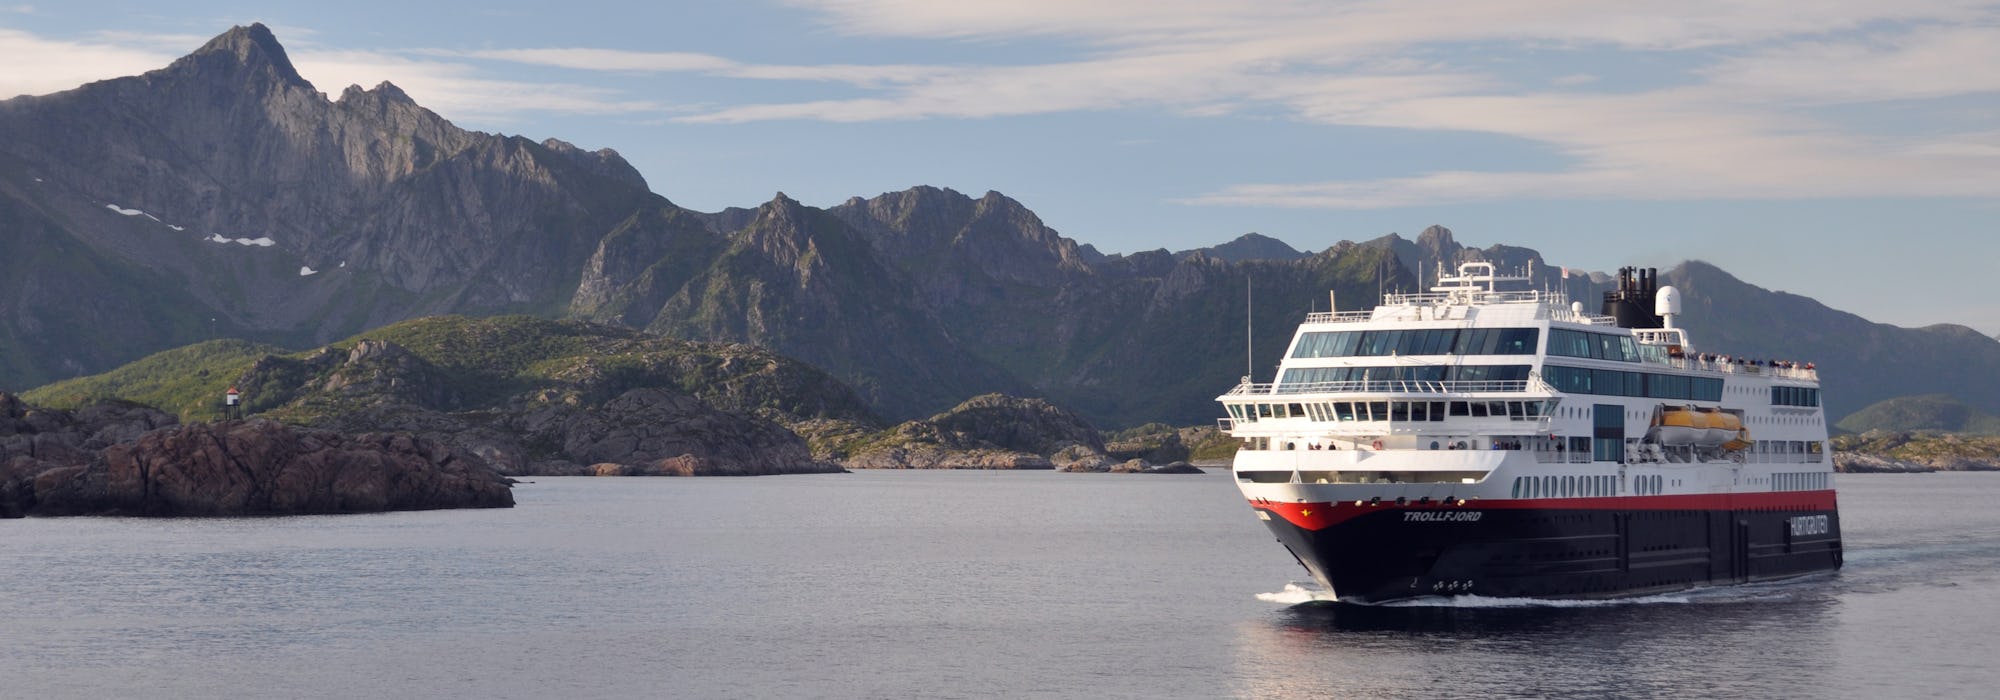 MS Trollfjord kryssar fram mellan de vackra norska fjordarna.